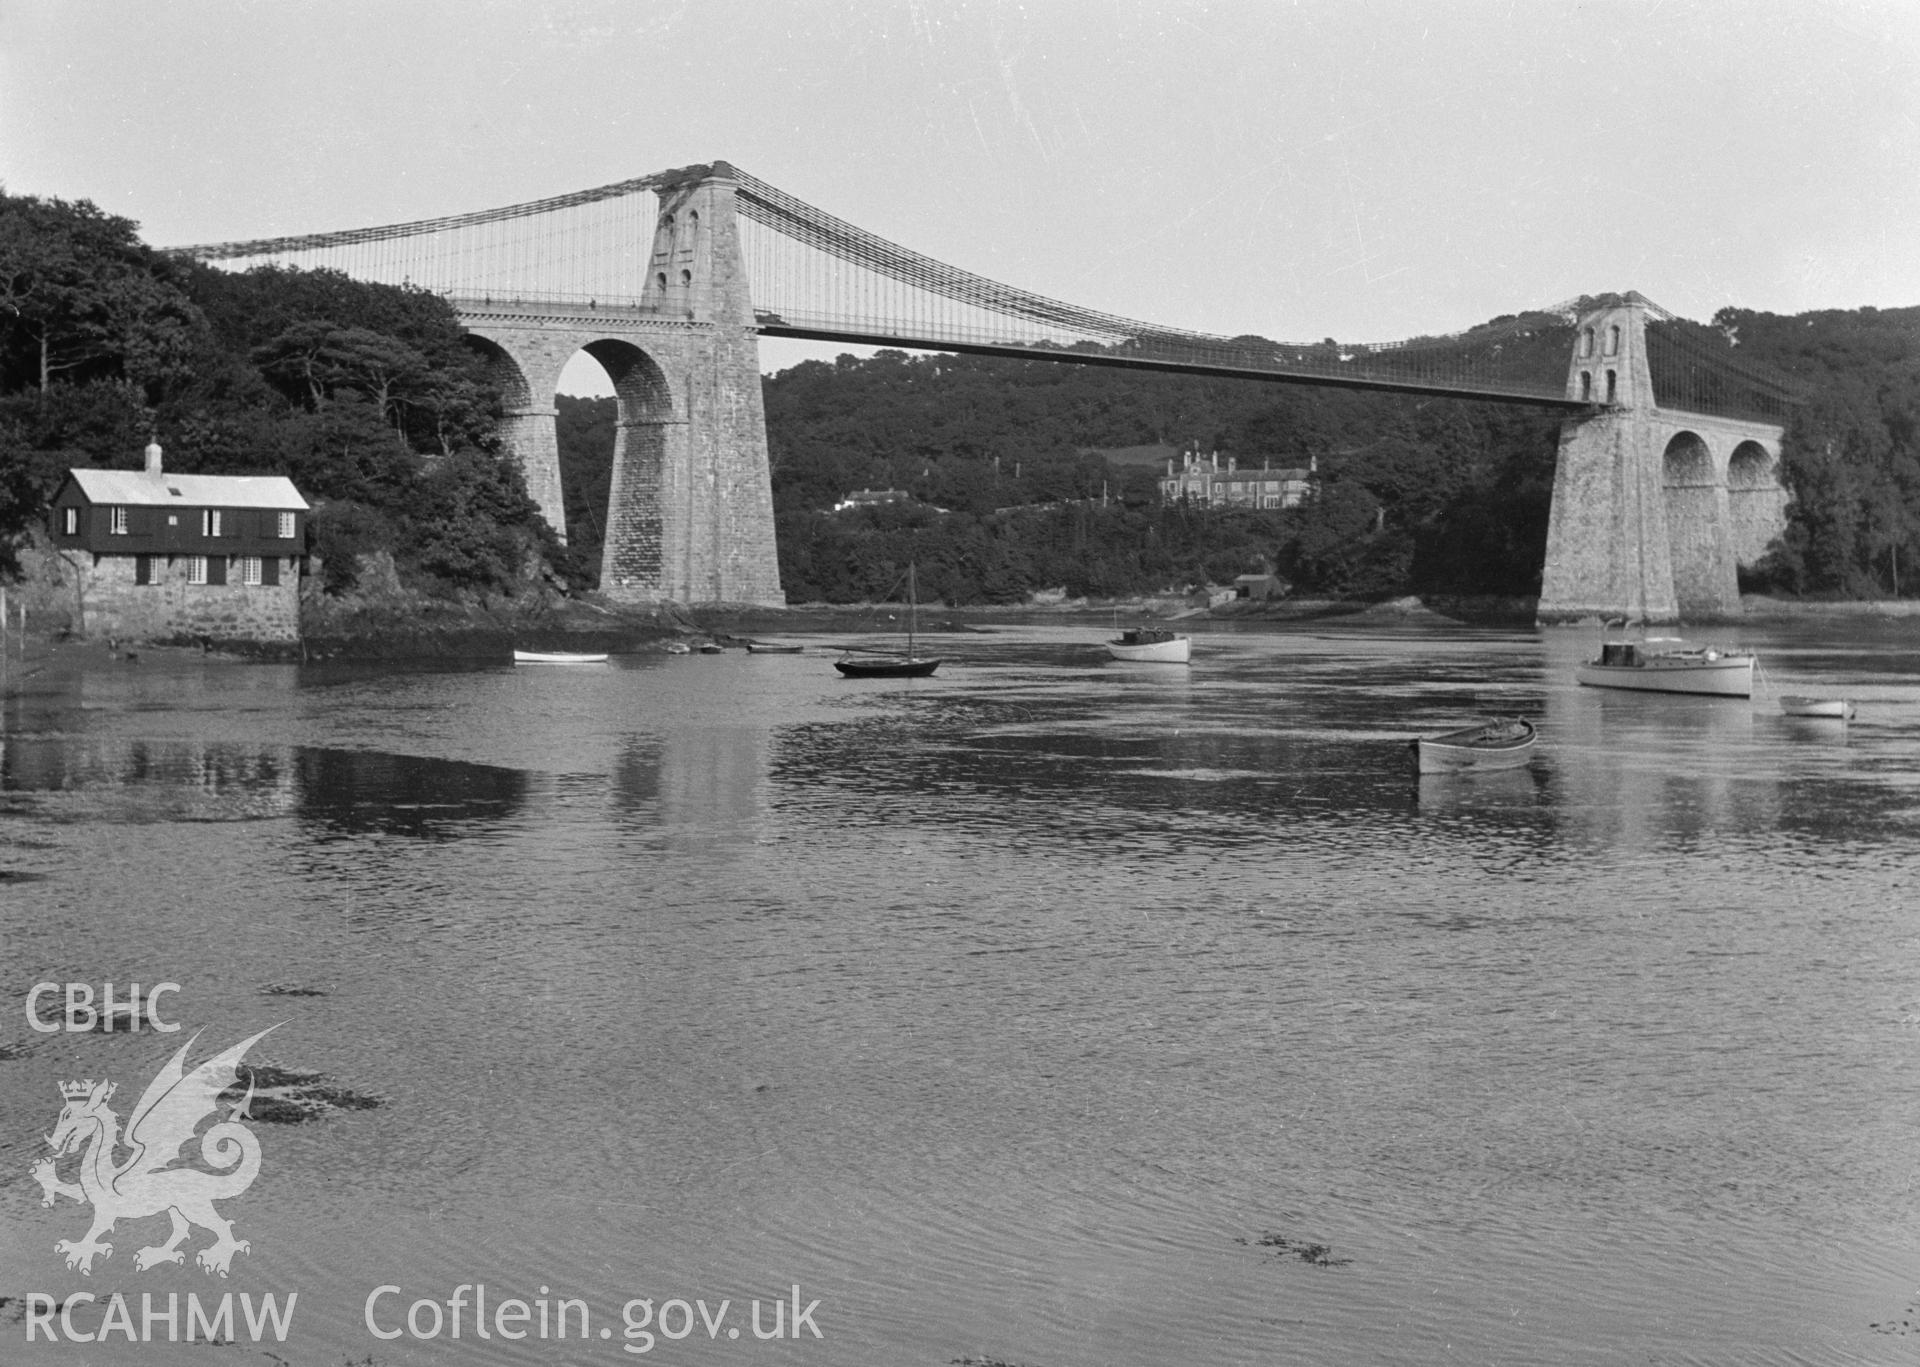 Black and white print of Menai Suspension Bridge, Menai Bridge, taken from the Ministry of Works Collection.